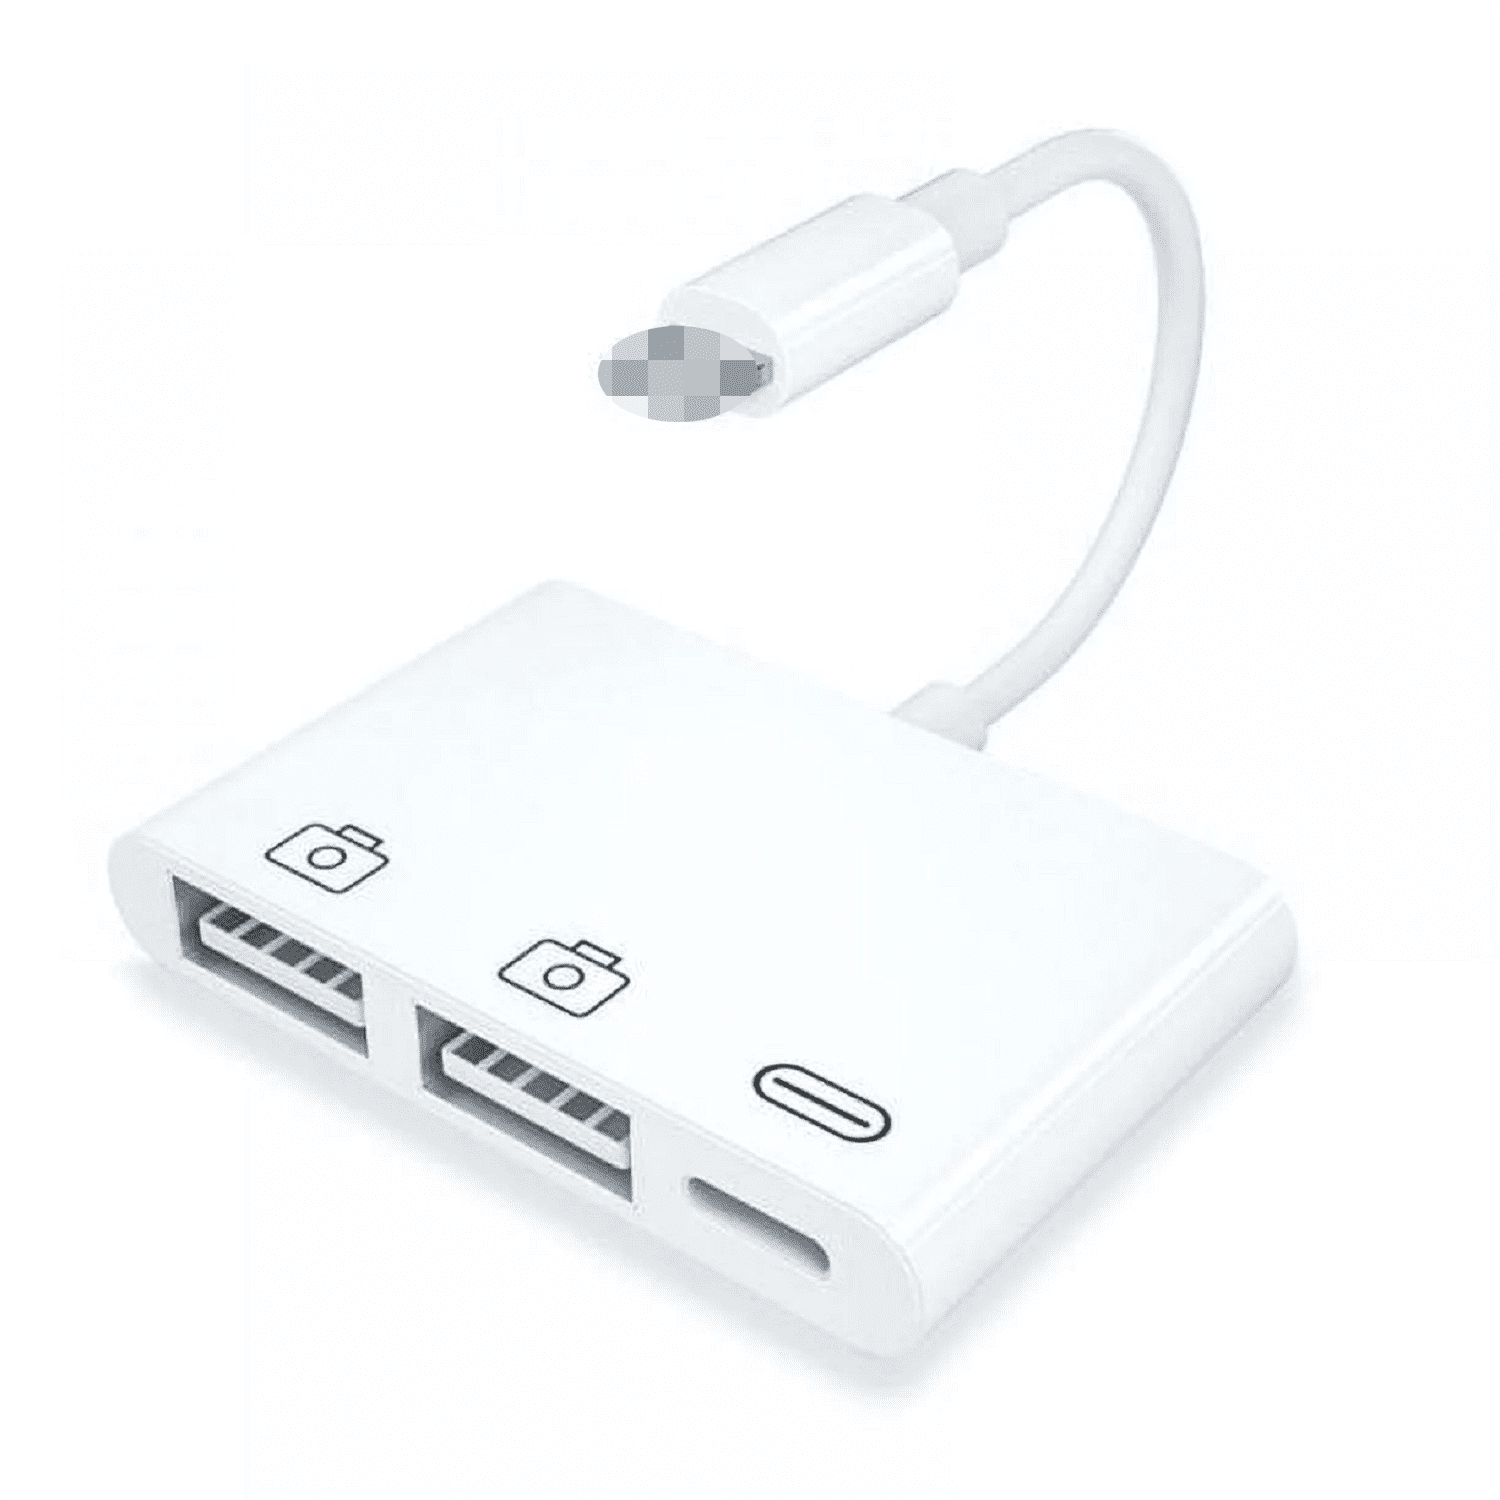 Clé USB 3.0 Tipmant compatible pour iPhone iPad iOS Lightning téléphone  portable Android et PC Memory Stick OTG - Or (64 Go)